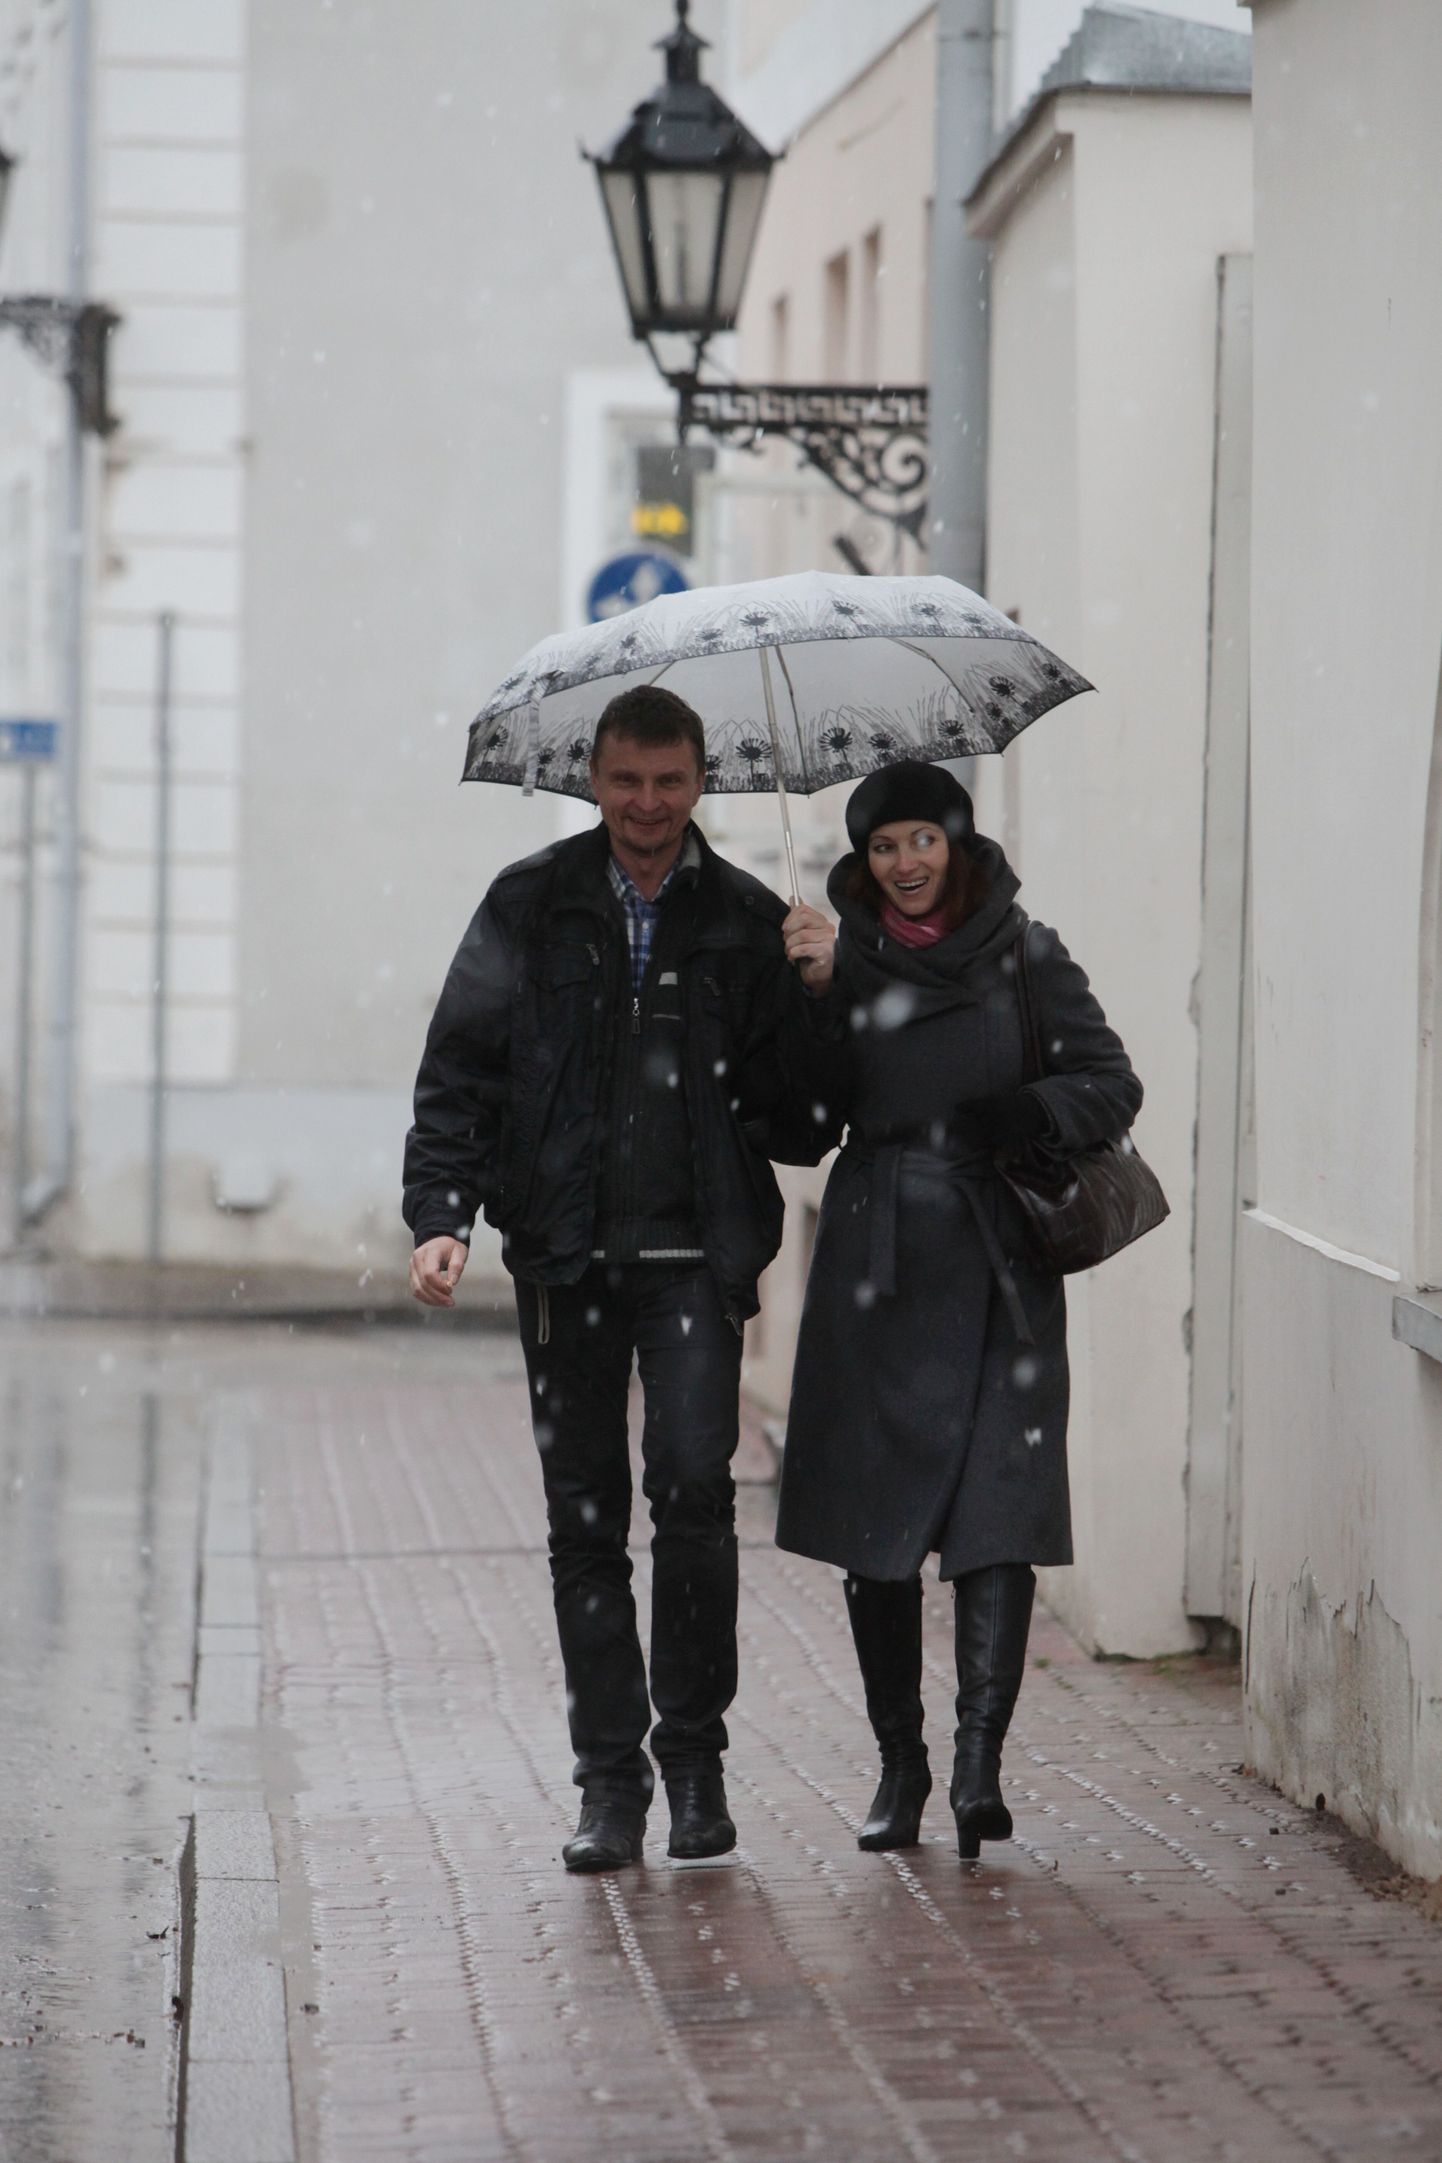 Tartus sadas täna sel sügisel esimest korda lund. Linnatänaval avasid inimesed vihmavarjud. Teedel linnast väljas leidus ka libedaid kohti.